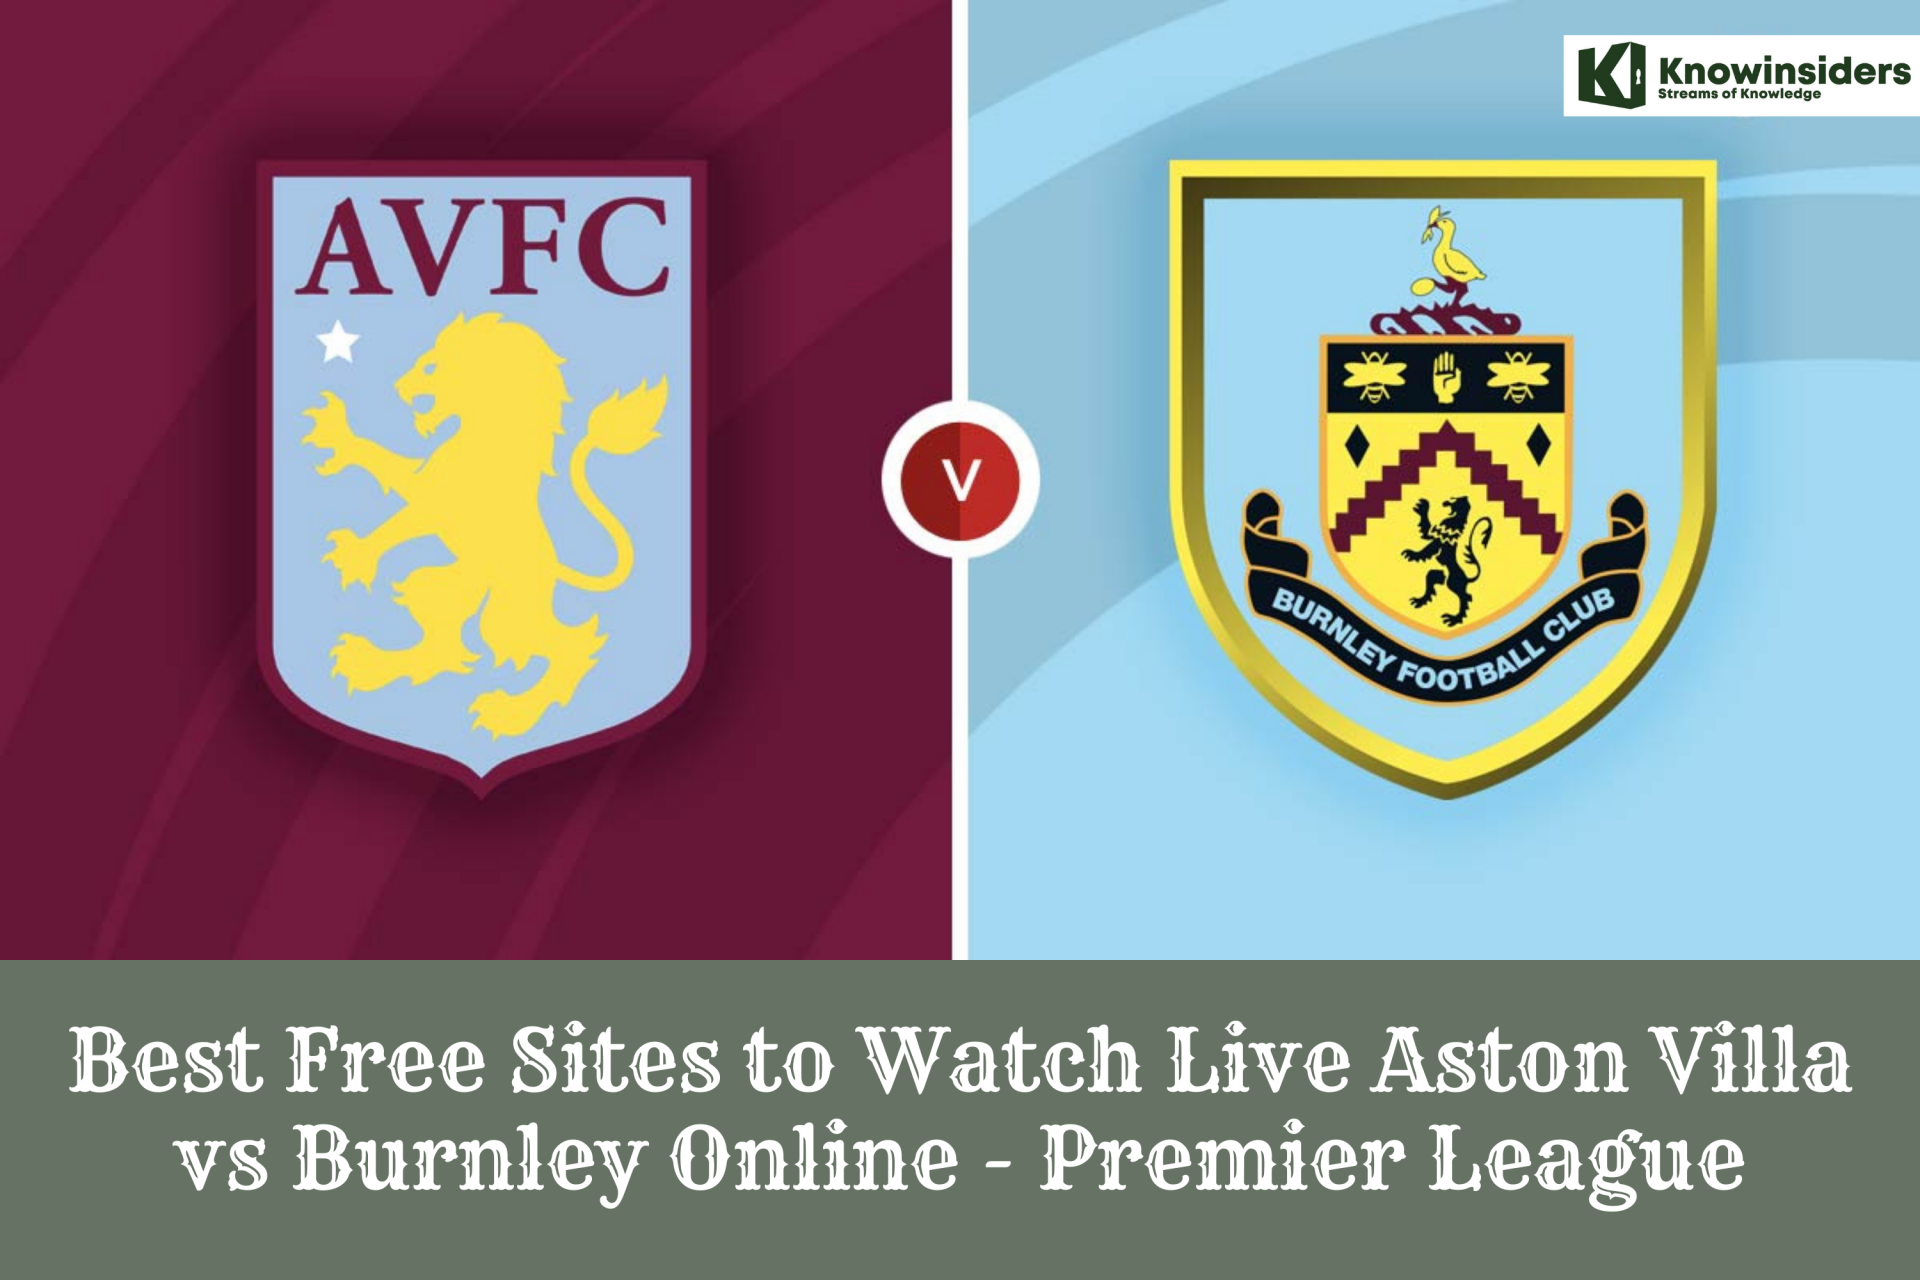 Best Free Sites to Watch Live Aston Villa vs Burnley Online - Premier League